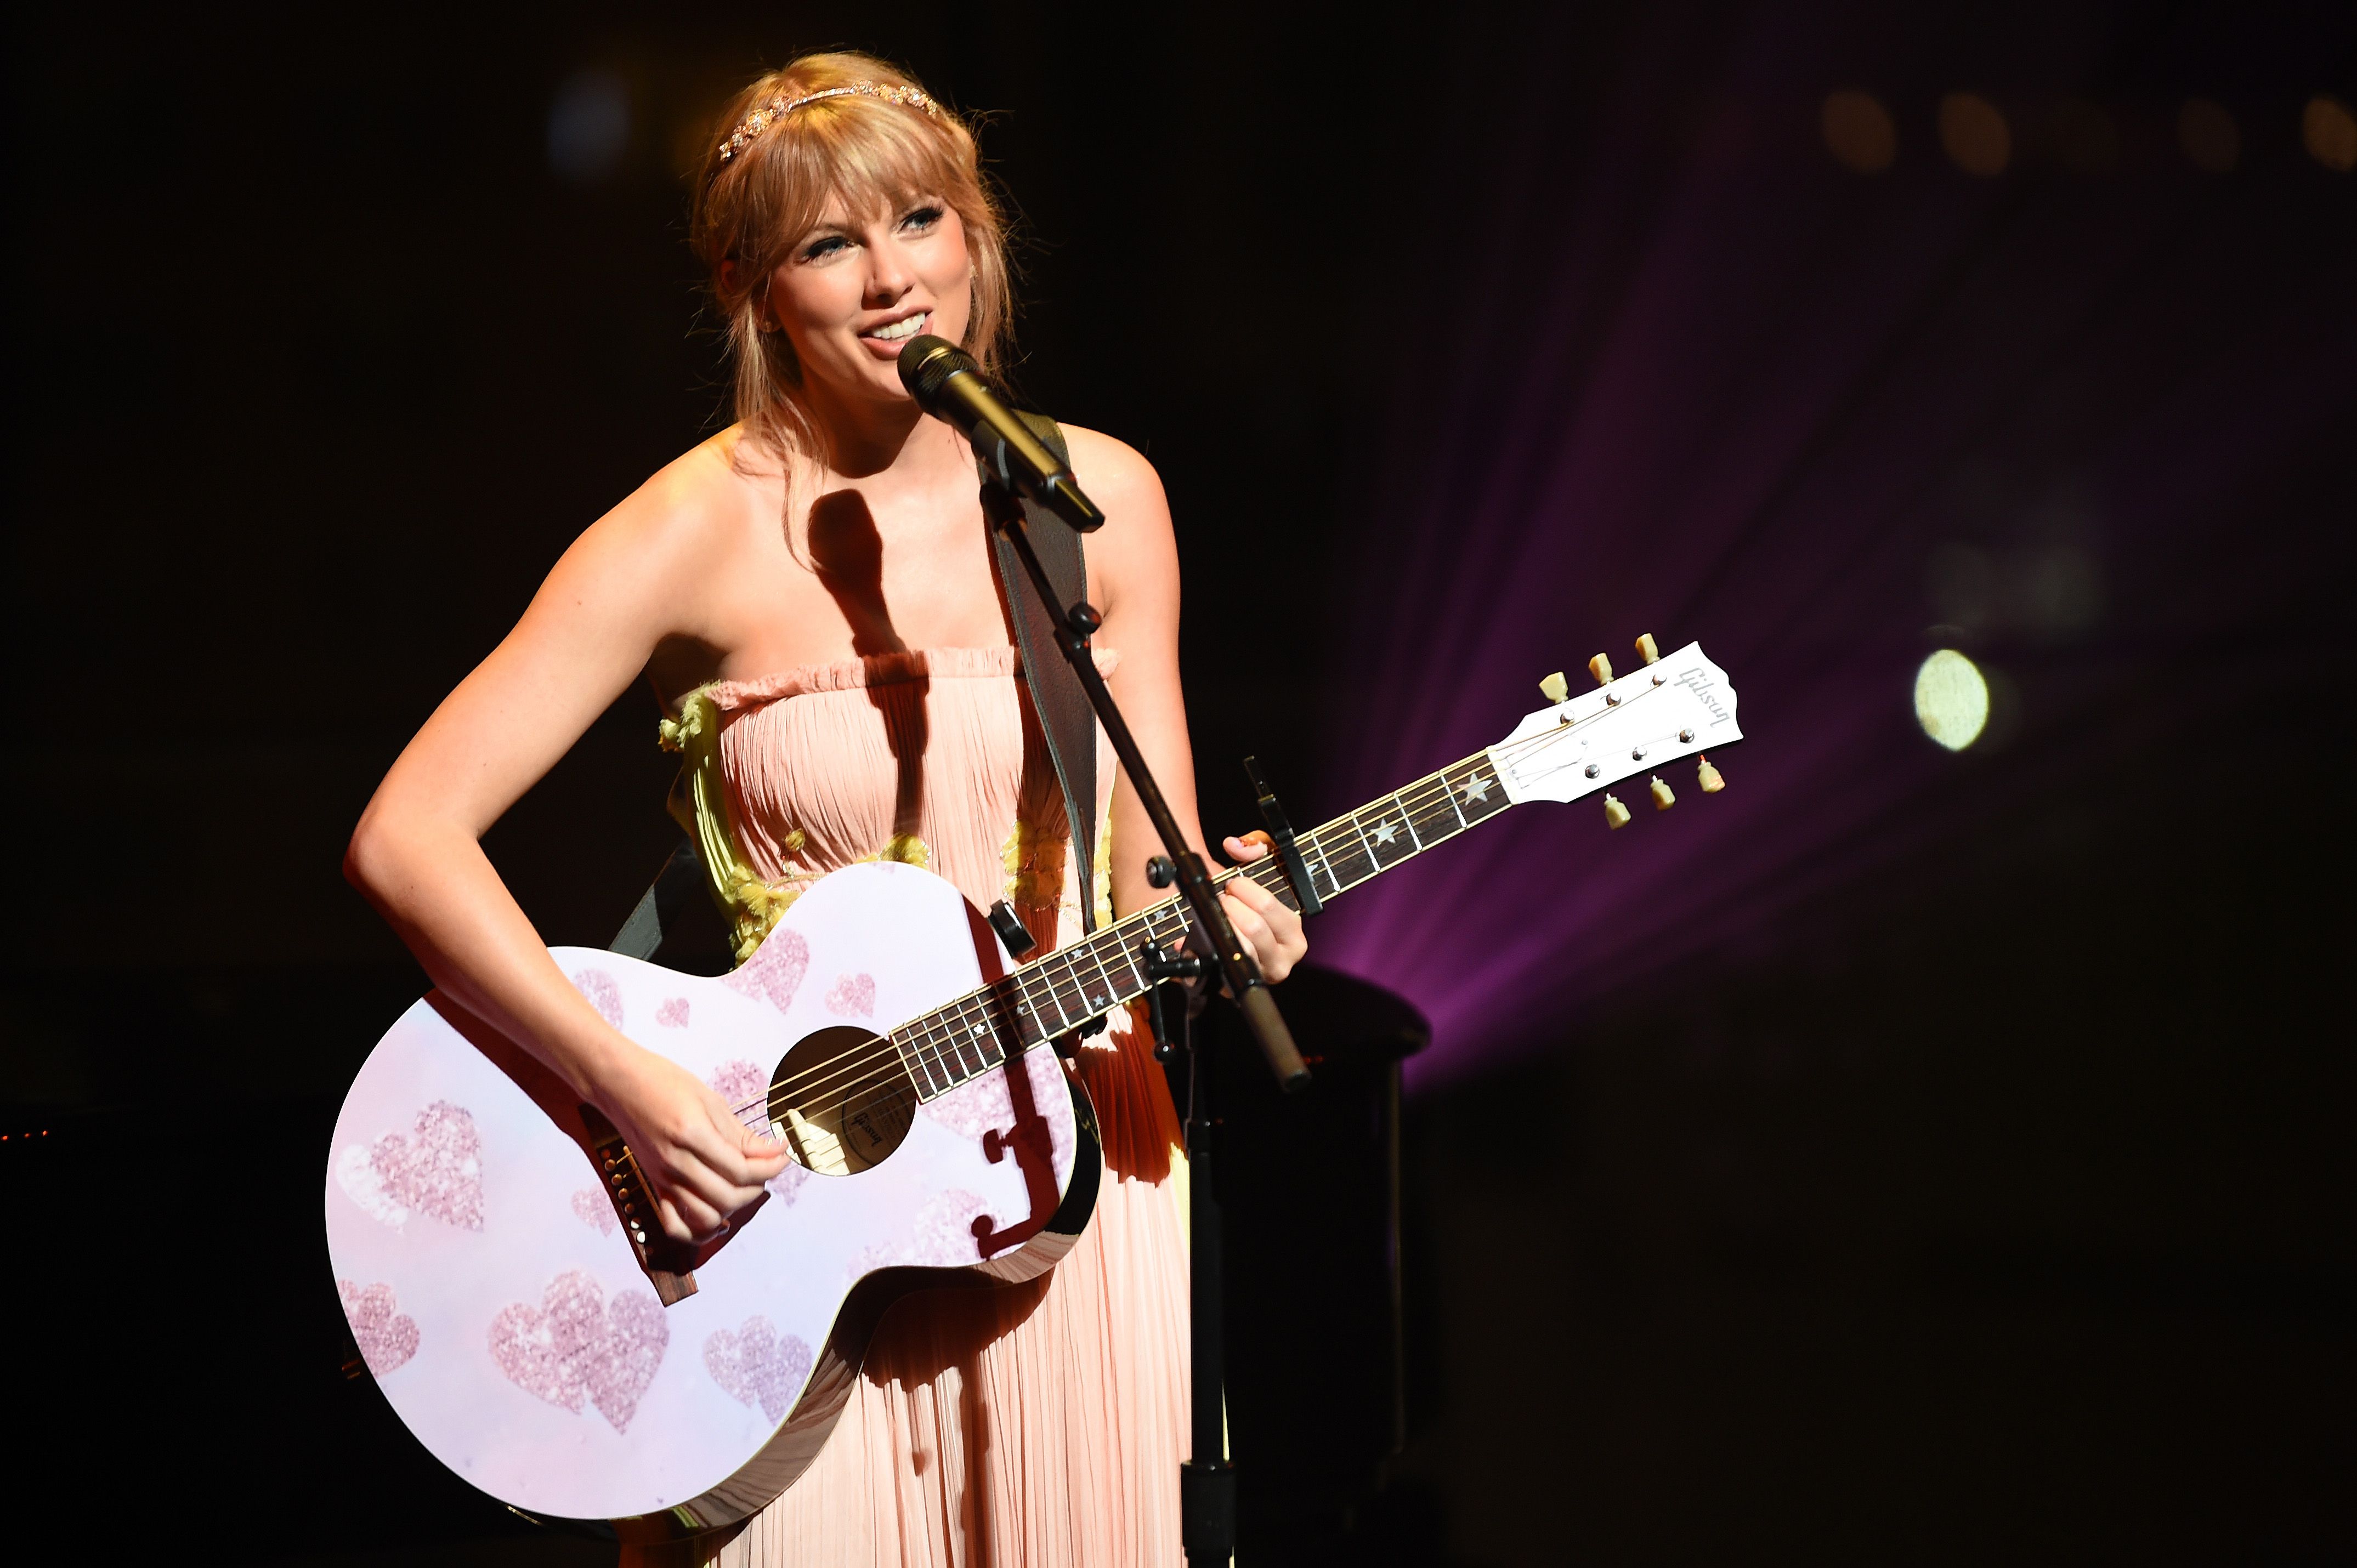 La canción "Exile" de Taylor Swift habla de relaciones tóxicas y se siente como una secuela de "La última vez"